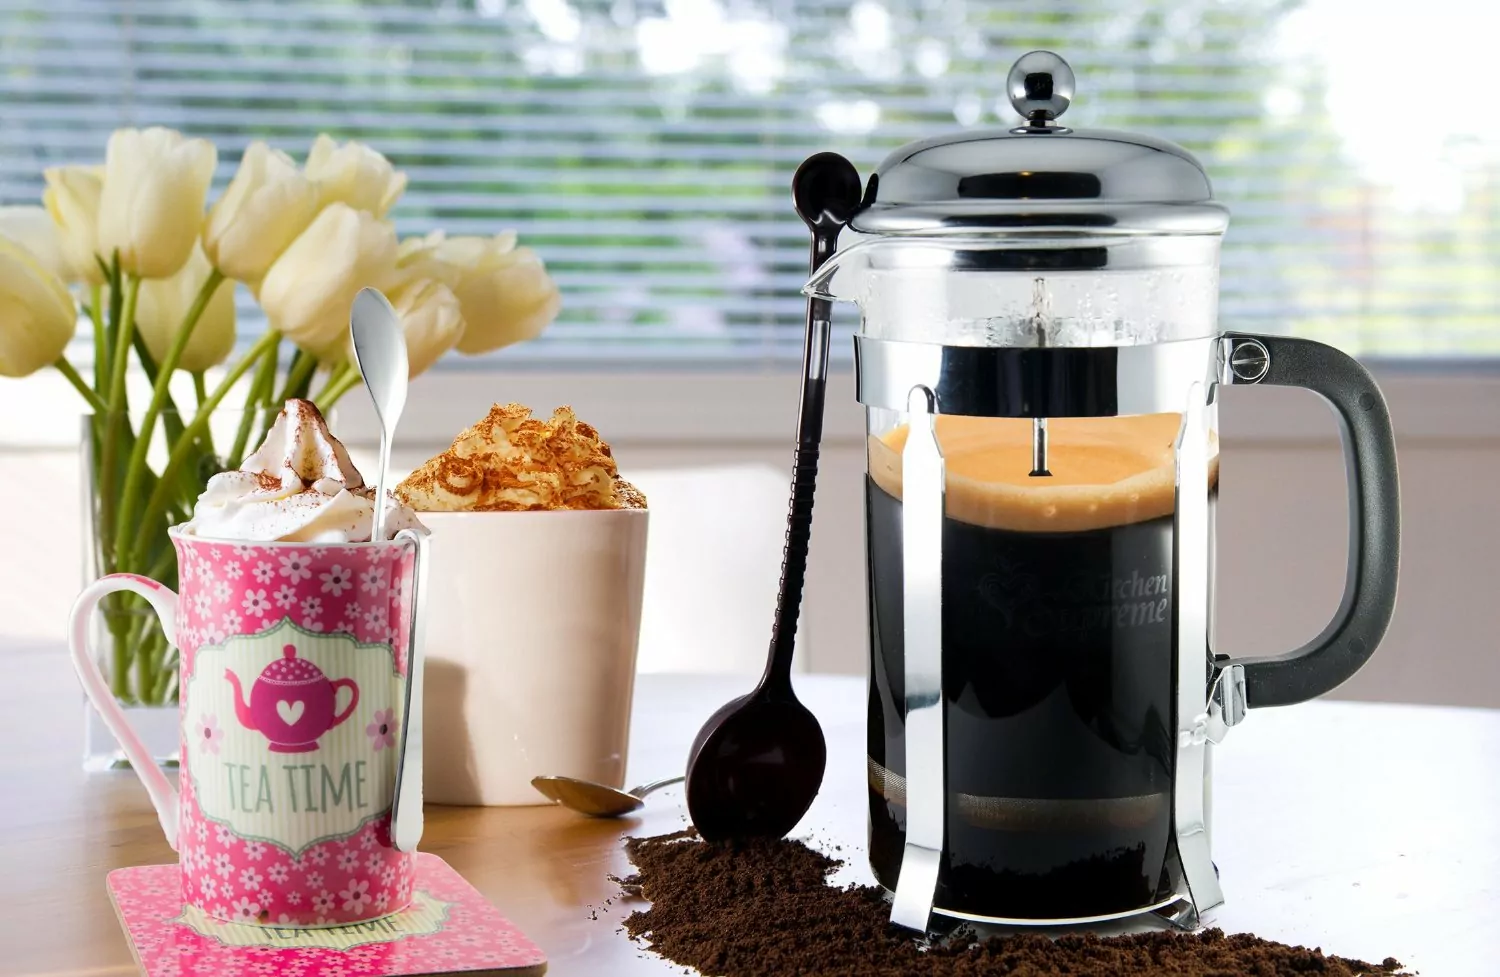 Френч-пресс для кофе - как пользоваться чтобы заварить вкусный кофе